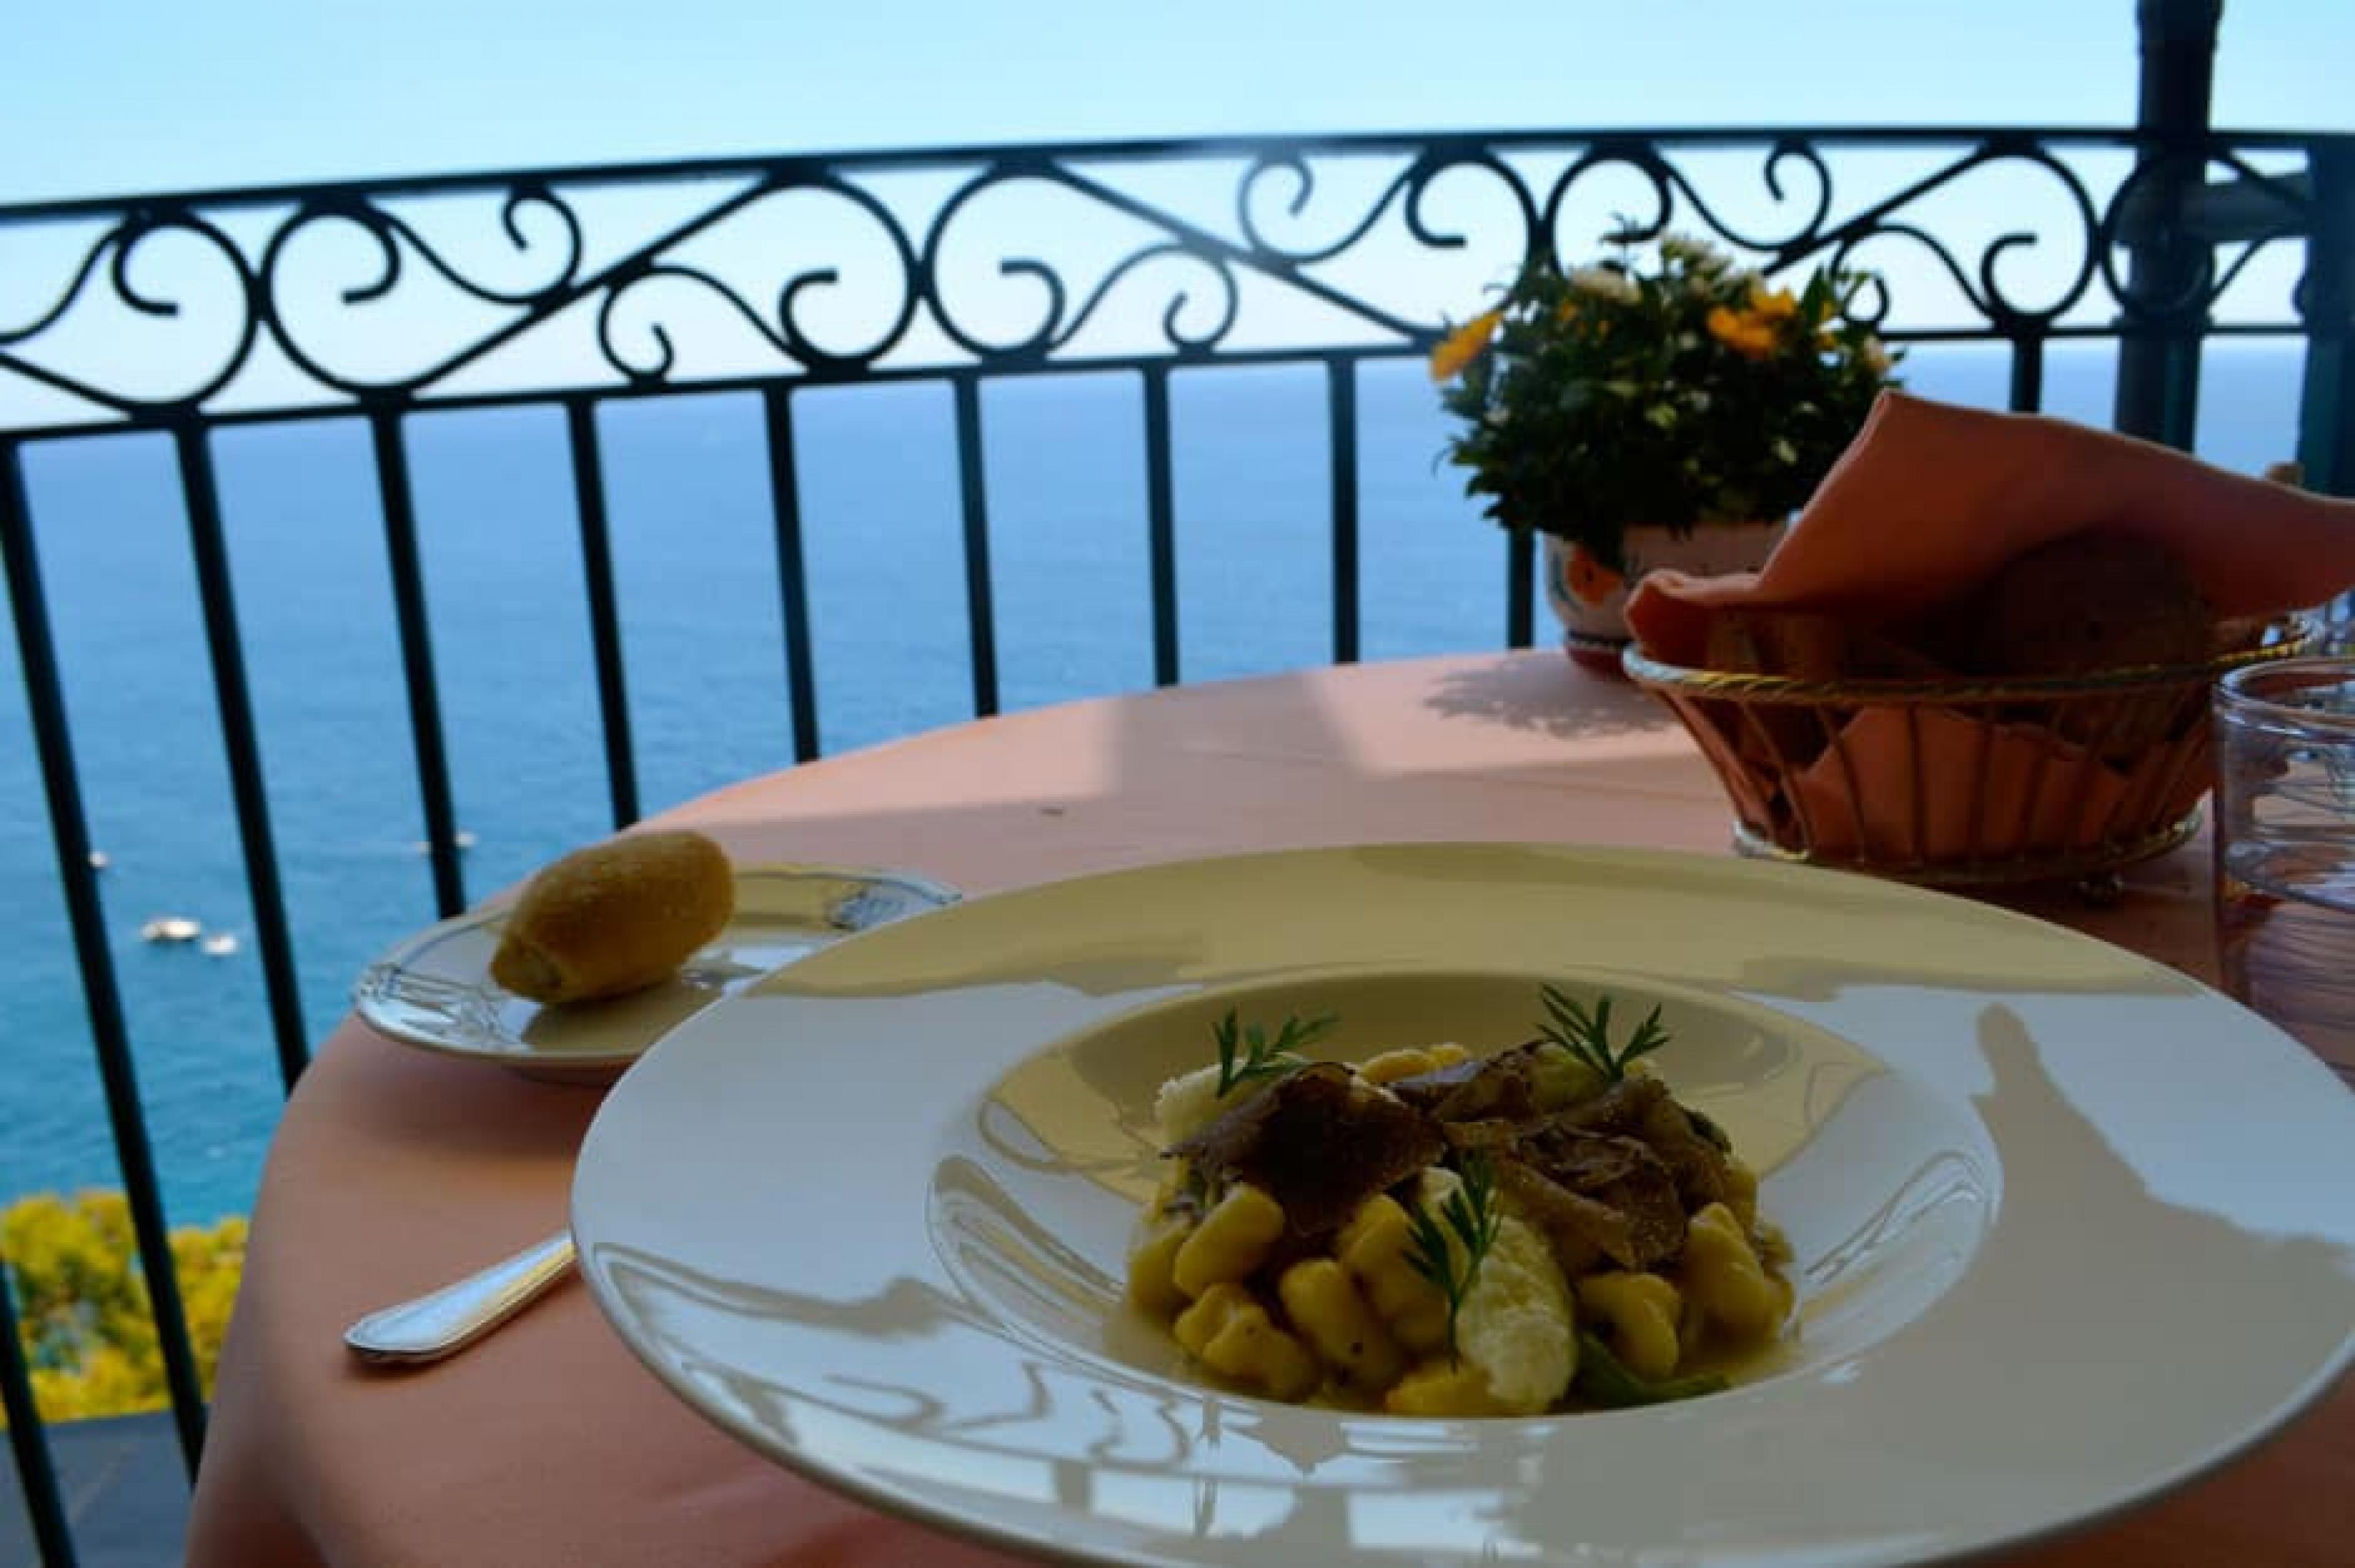 Food on table overlooking the ocean at Il San Pietro’s Zass, Amalfi Coast, Italy